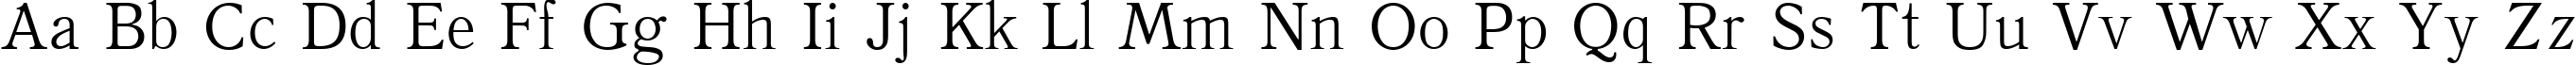 Пример написания английского алфавита шрифтом QuantAntiqua Medium